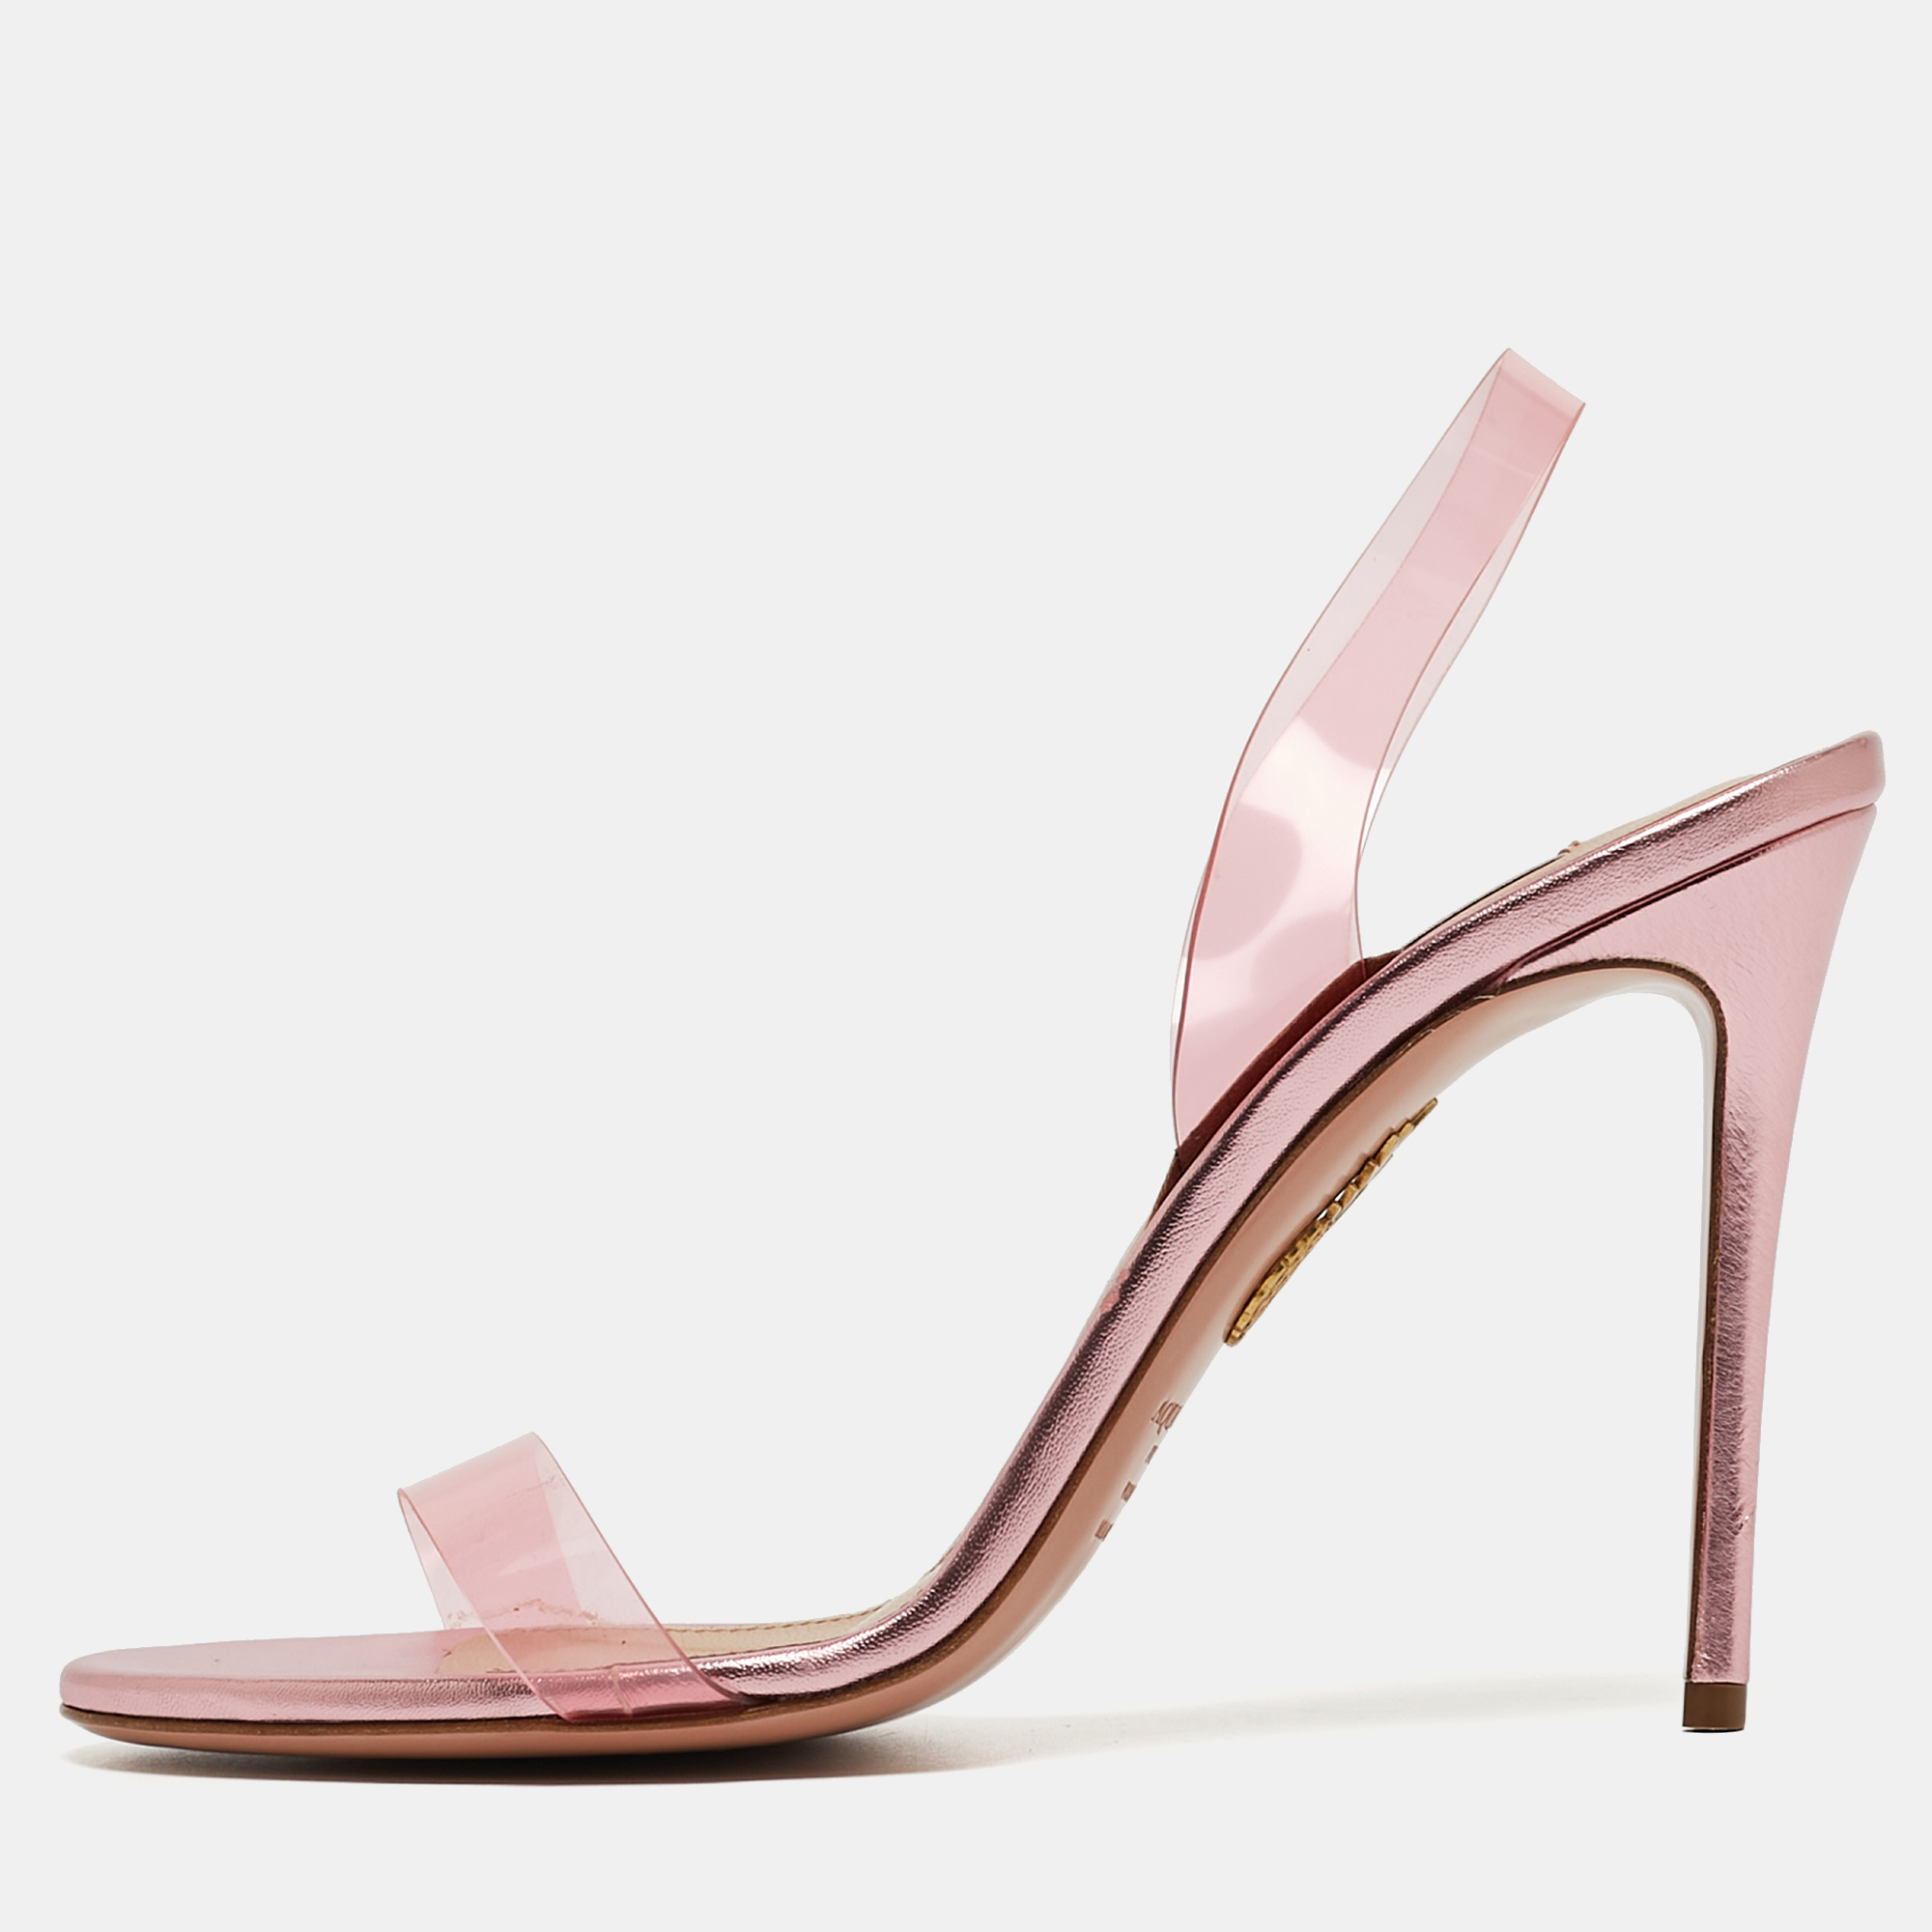 Aquazzura pink pvc so nude slingback sandals size 38